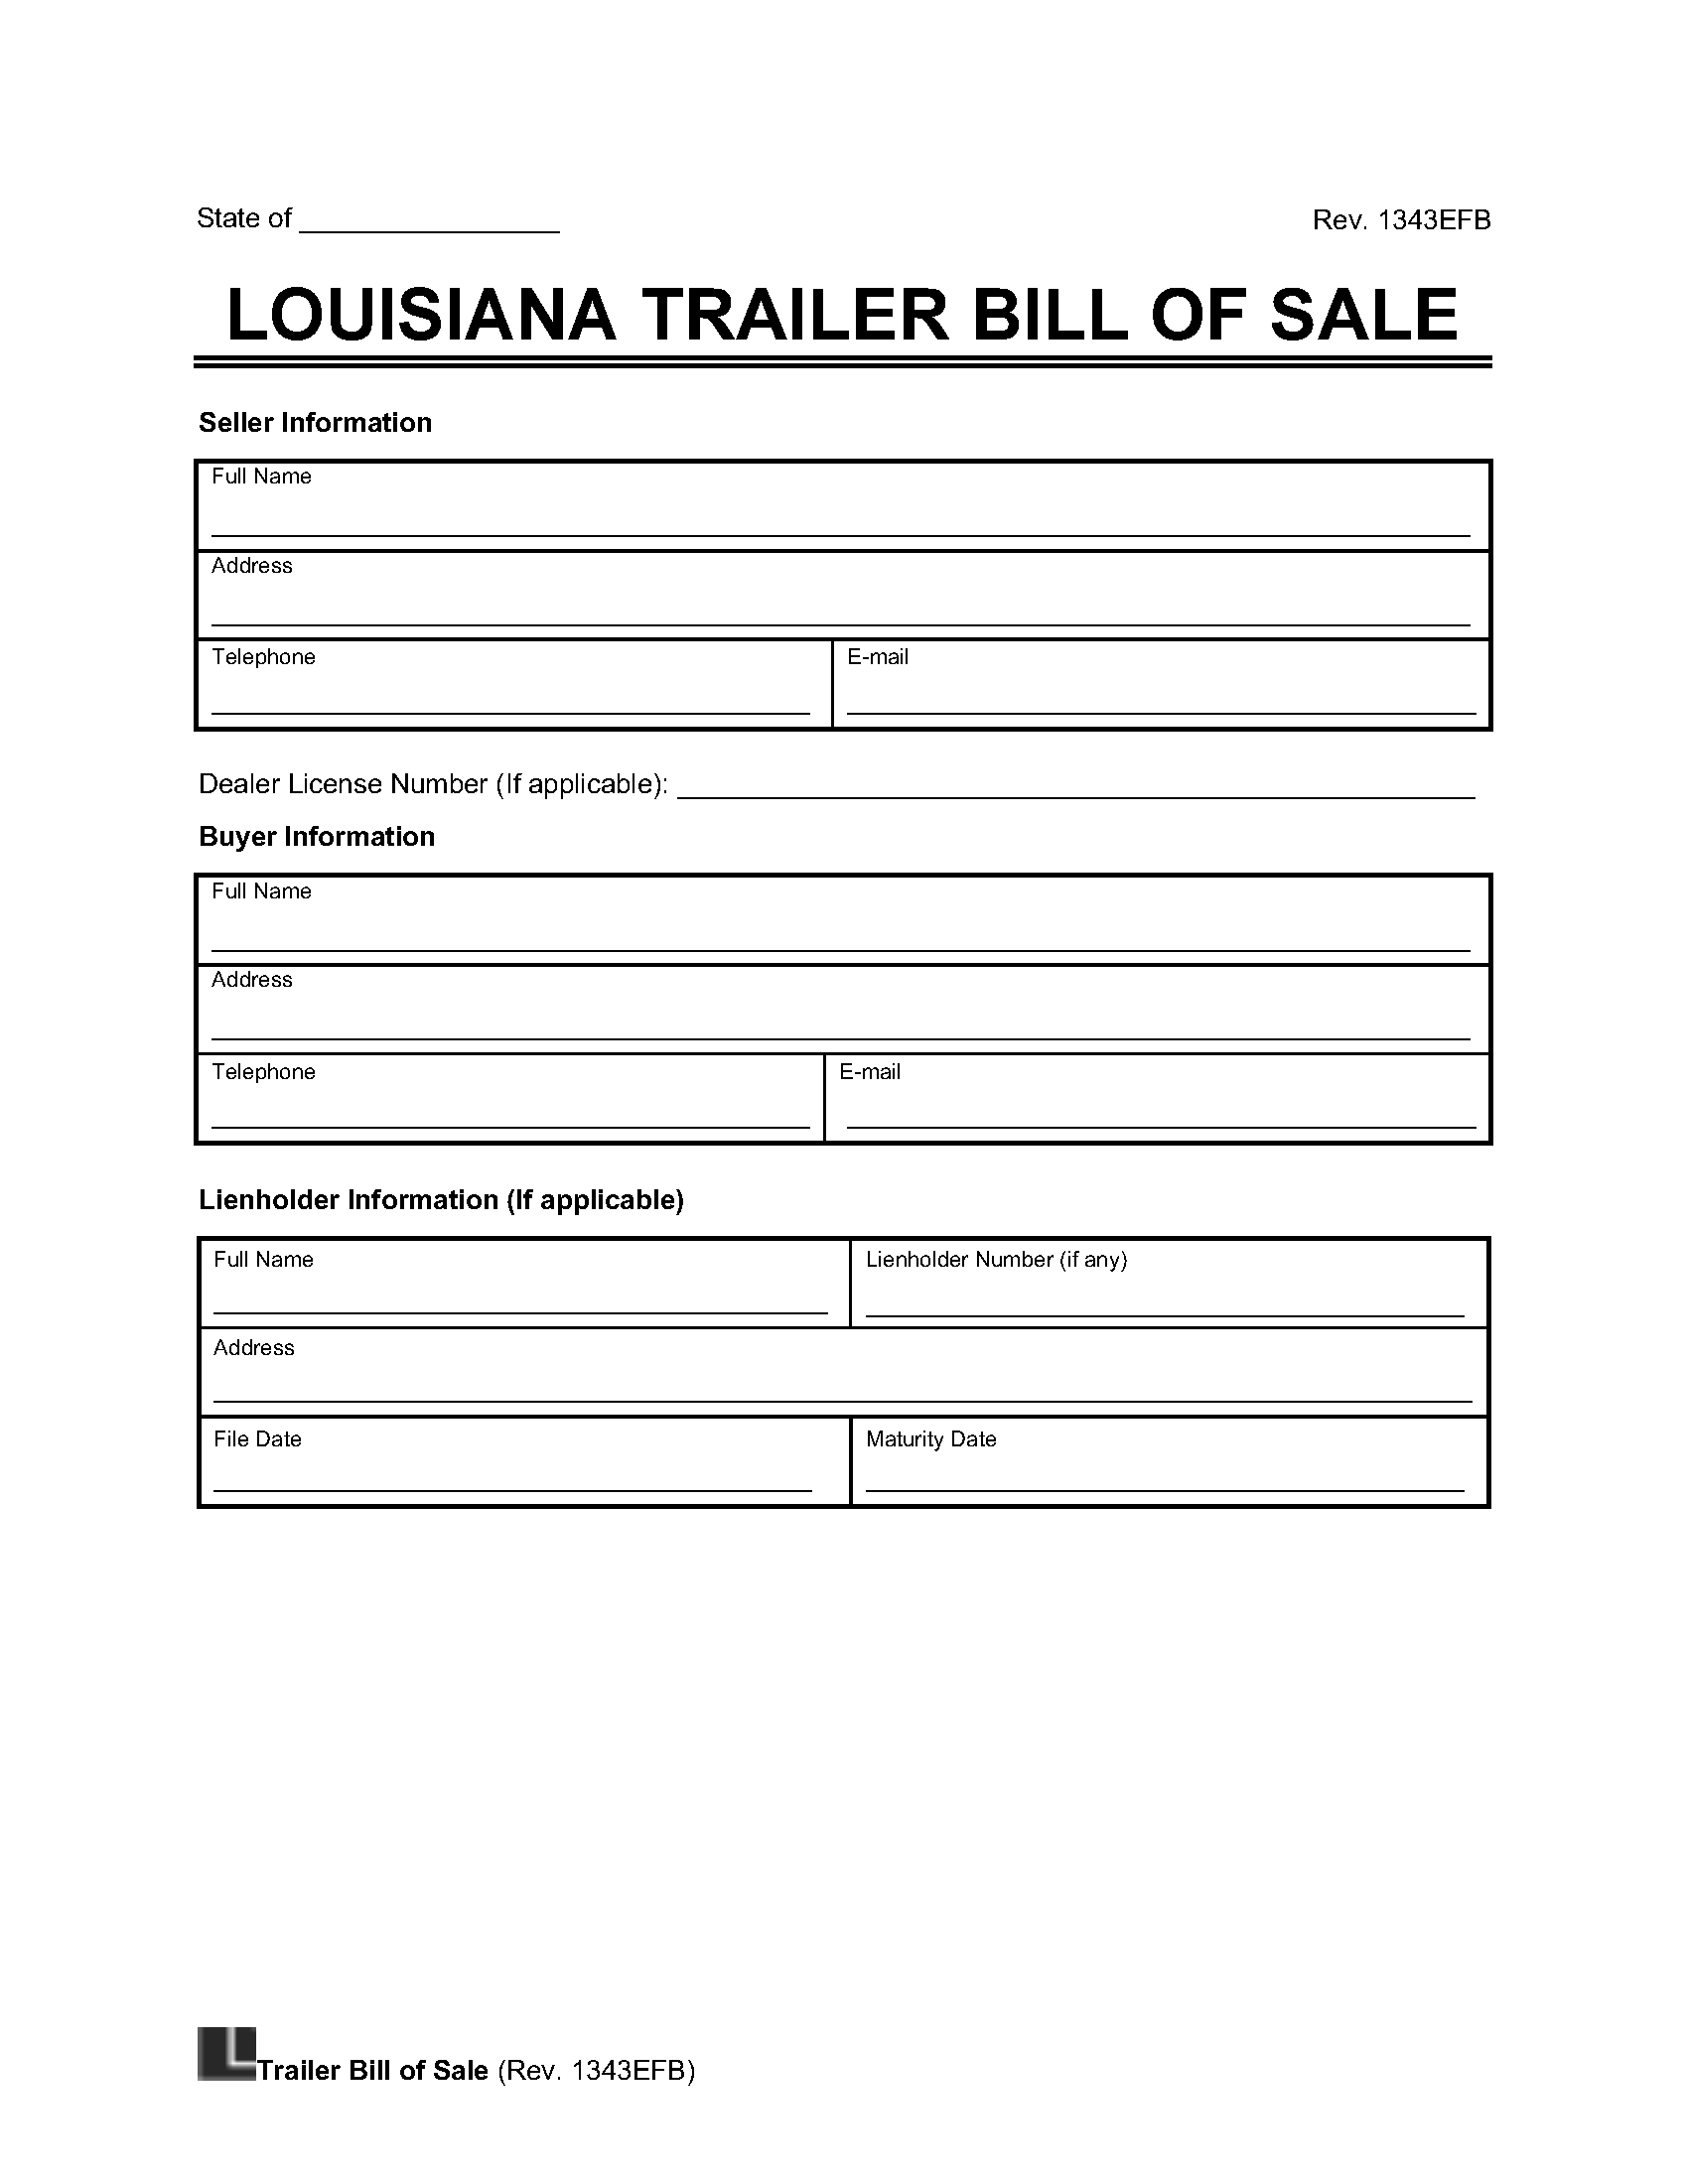 Louisiana Trailer Bill of Sale screenshot